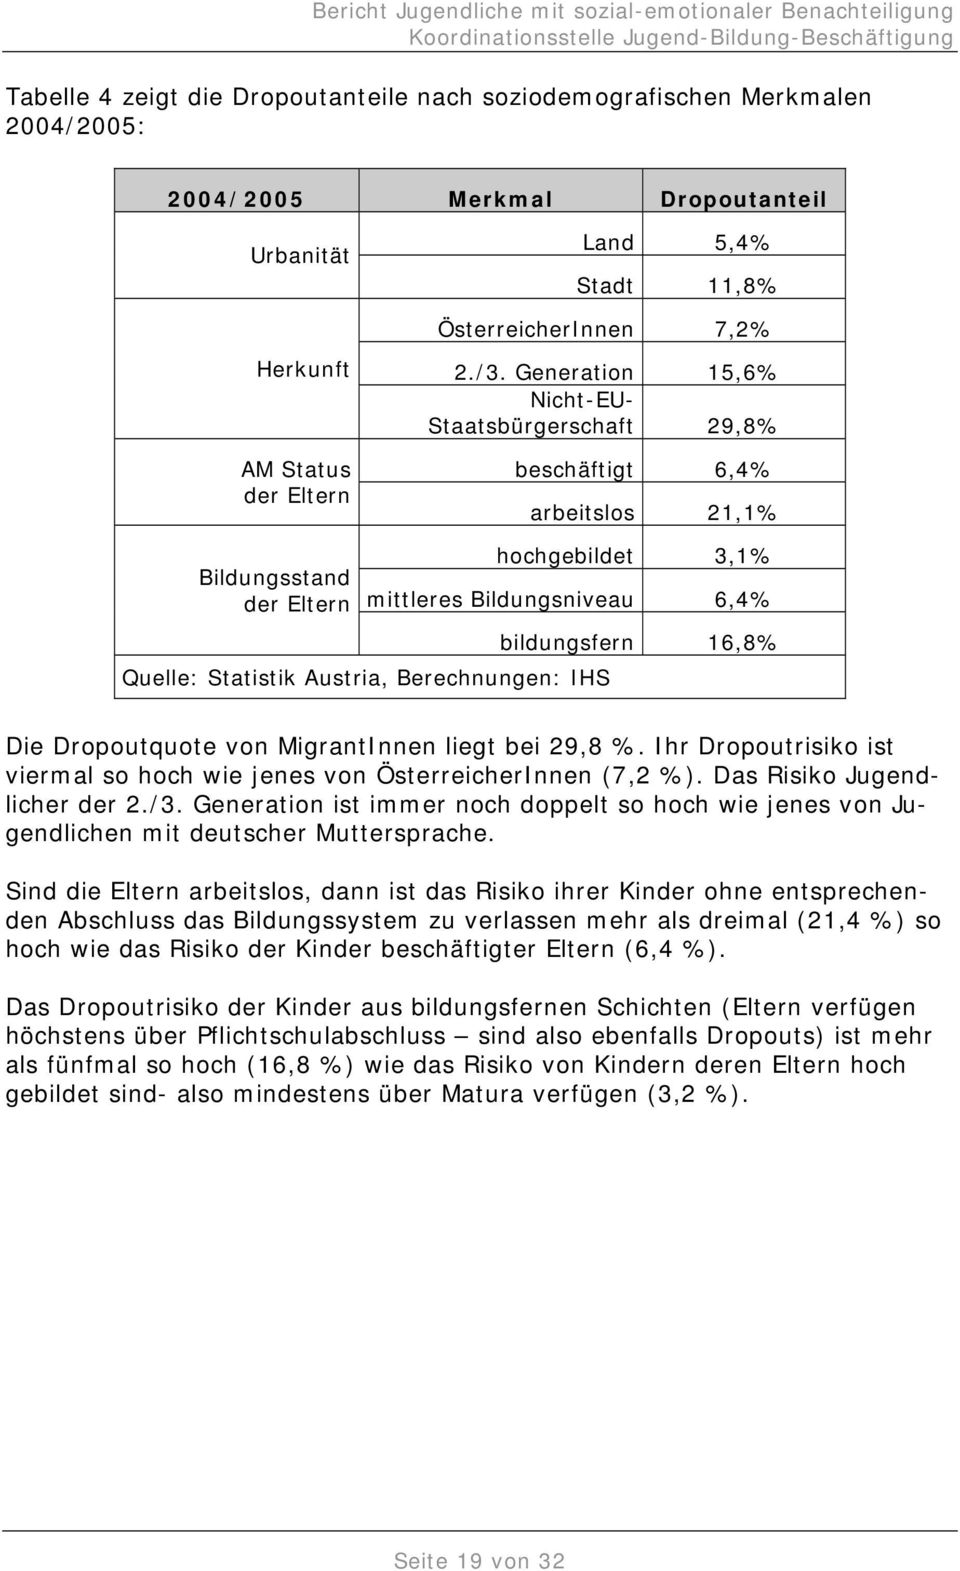 Austria, Berechnungen: IHS Die Dropoutquote von MigrantInnen liegt bei 29,8 %. Ihr Dropoutrisiko ist viermal so hoch wie jenes von ÖsterreicherInnen (7,2 %). Das Risiko Jugendlicher der 2./3.